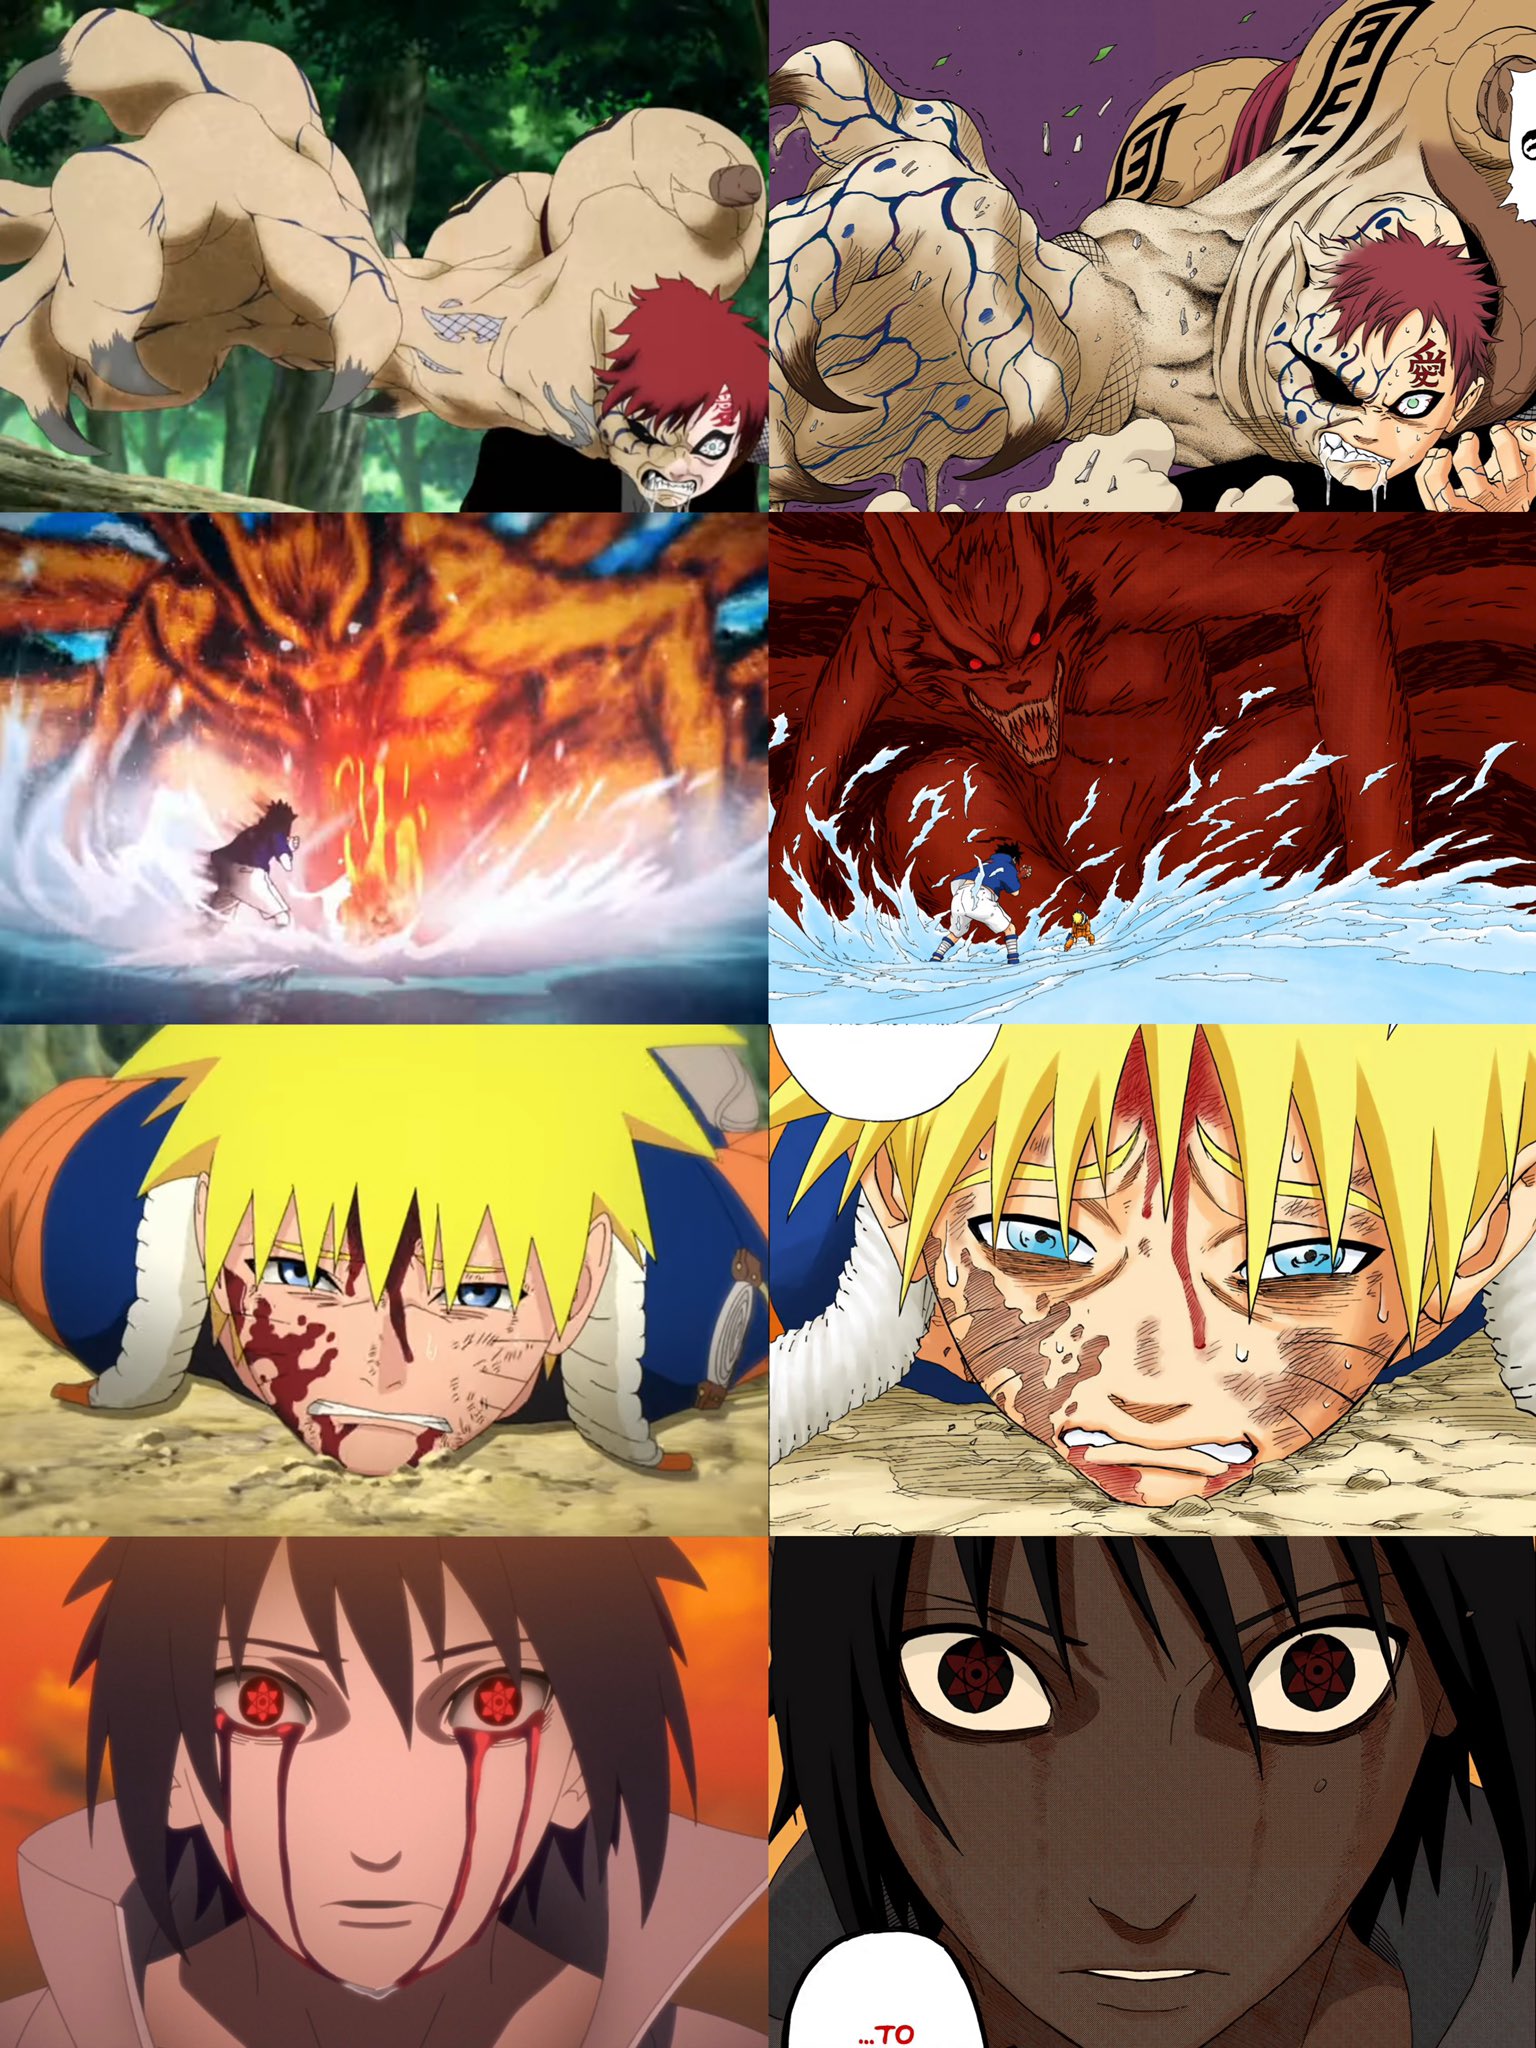 Naruto Original (2002) vs Remake (2022) // Road To Naruto 